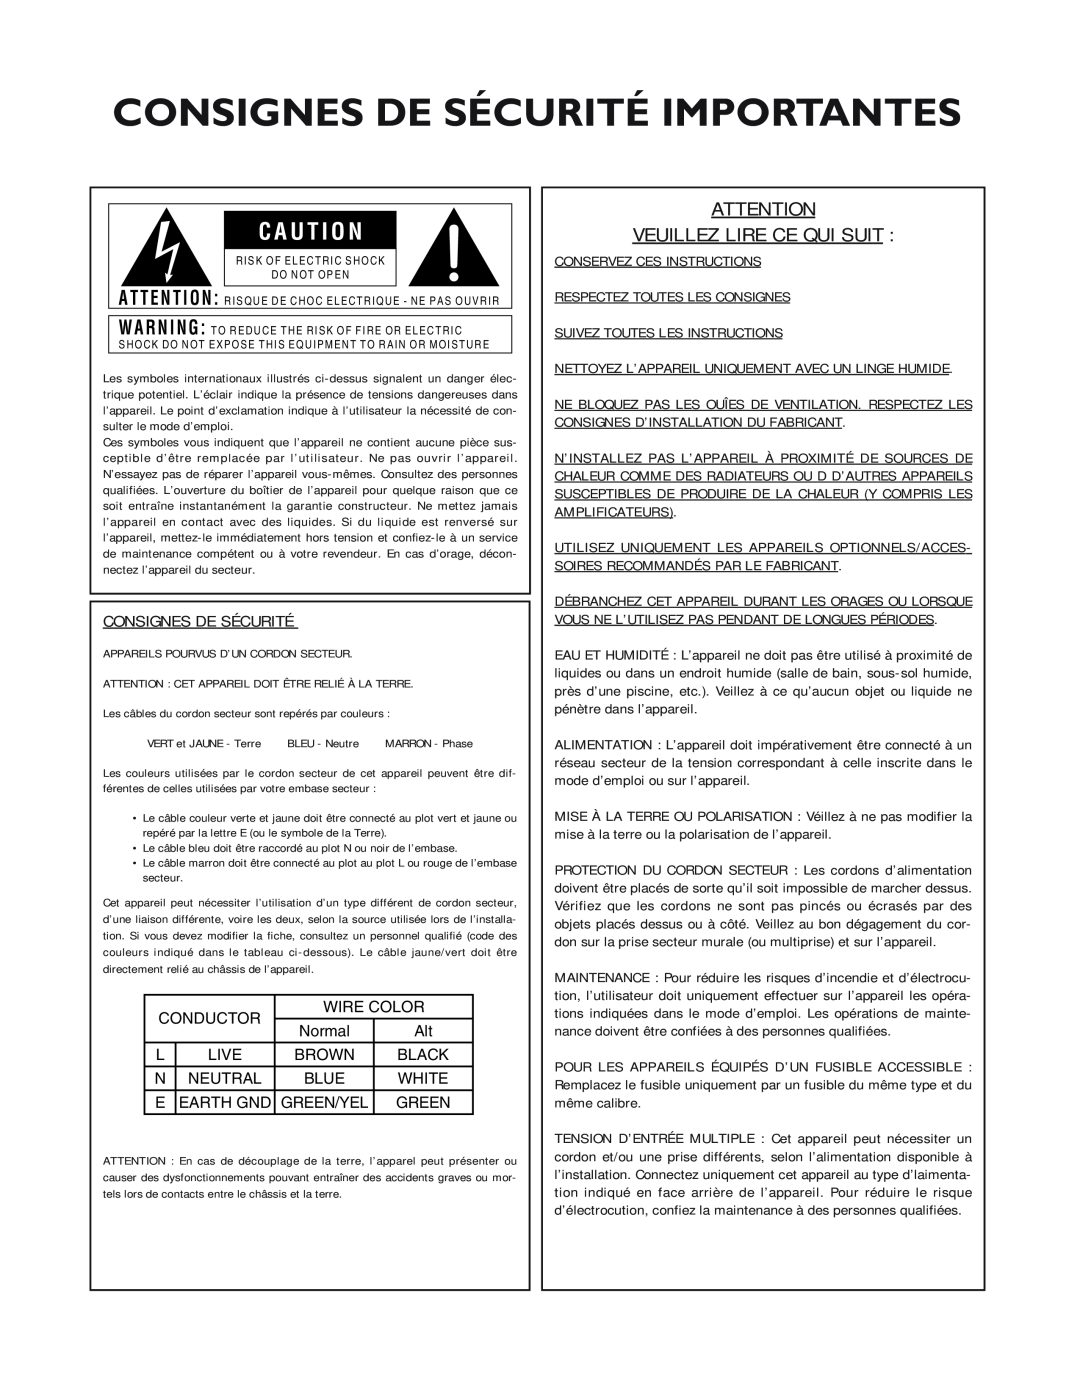 dbx Pro 12 Series operation manual Consignes De Sécurité Importantes, Veuillez Lire Ce Qui Suit, C A U T I O N 